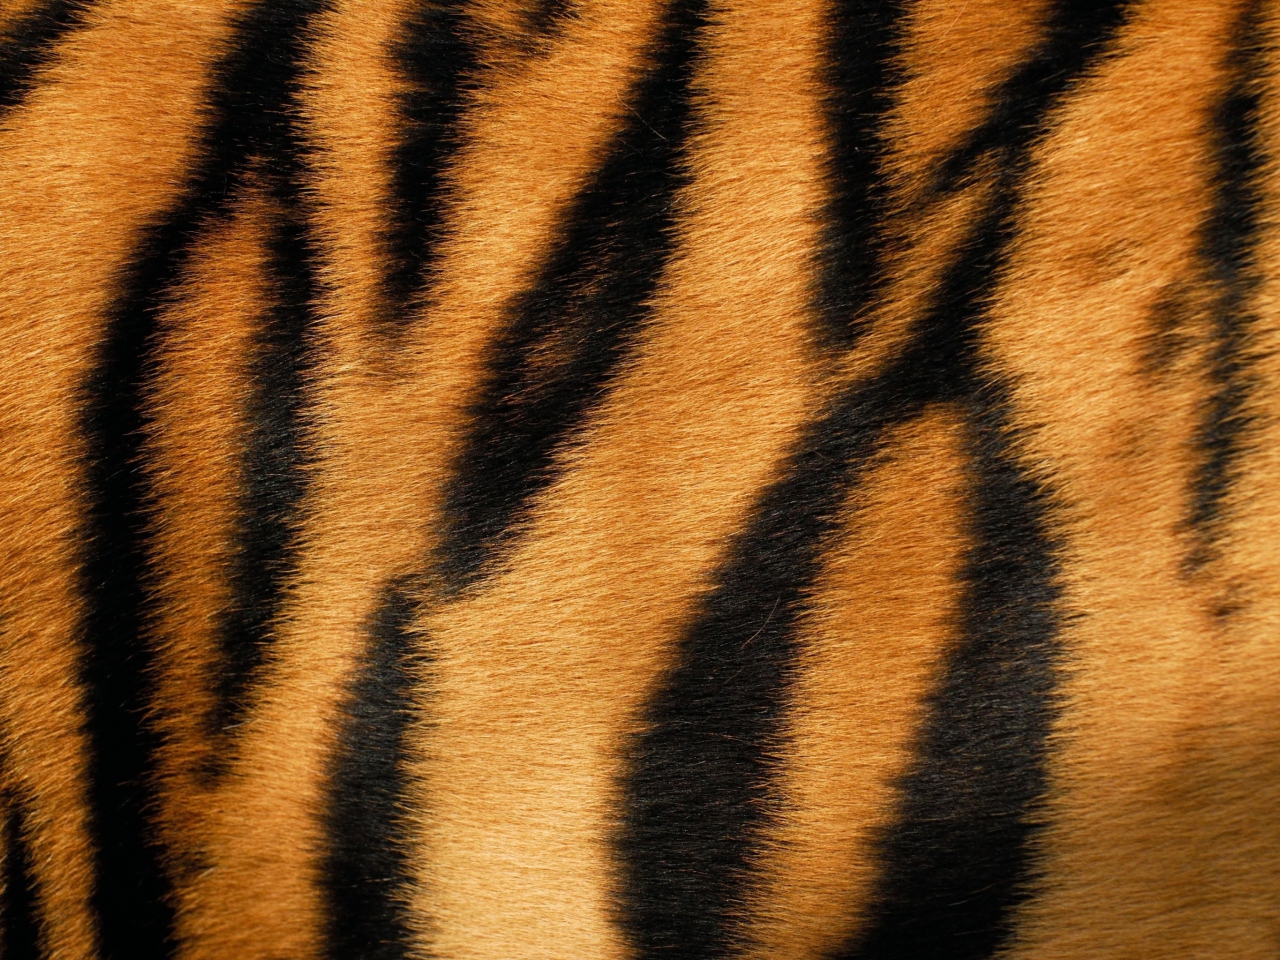 Tiger wallpaper 1280x960